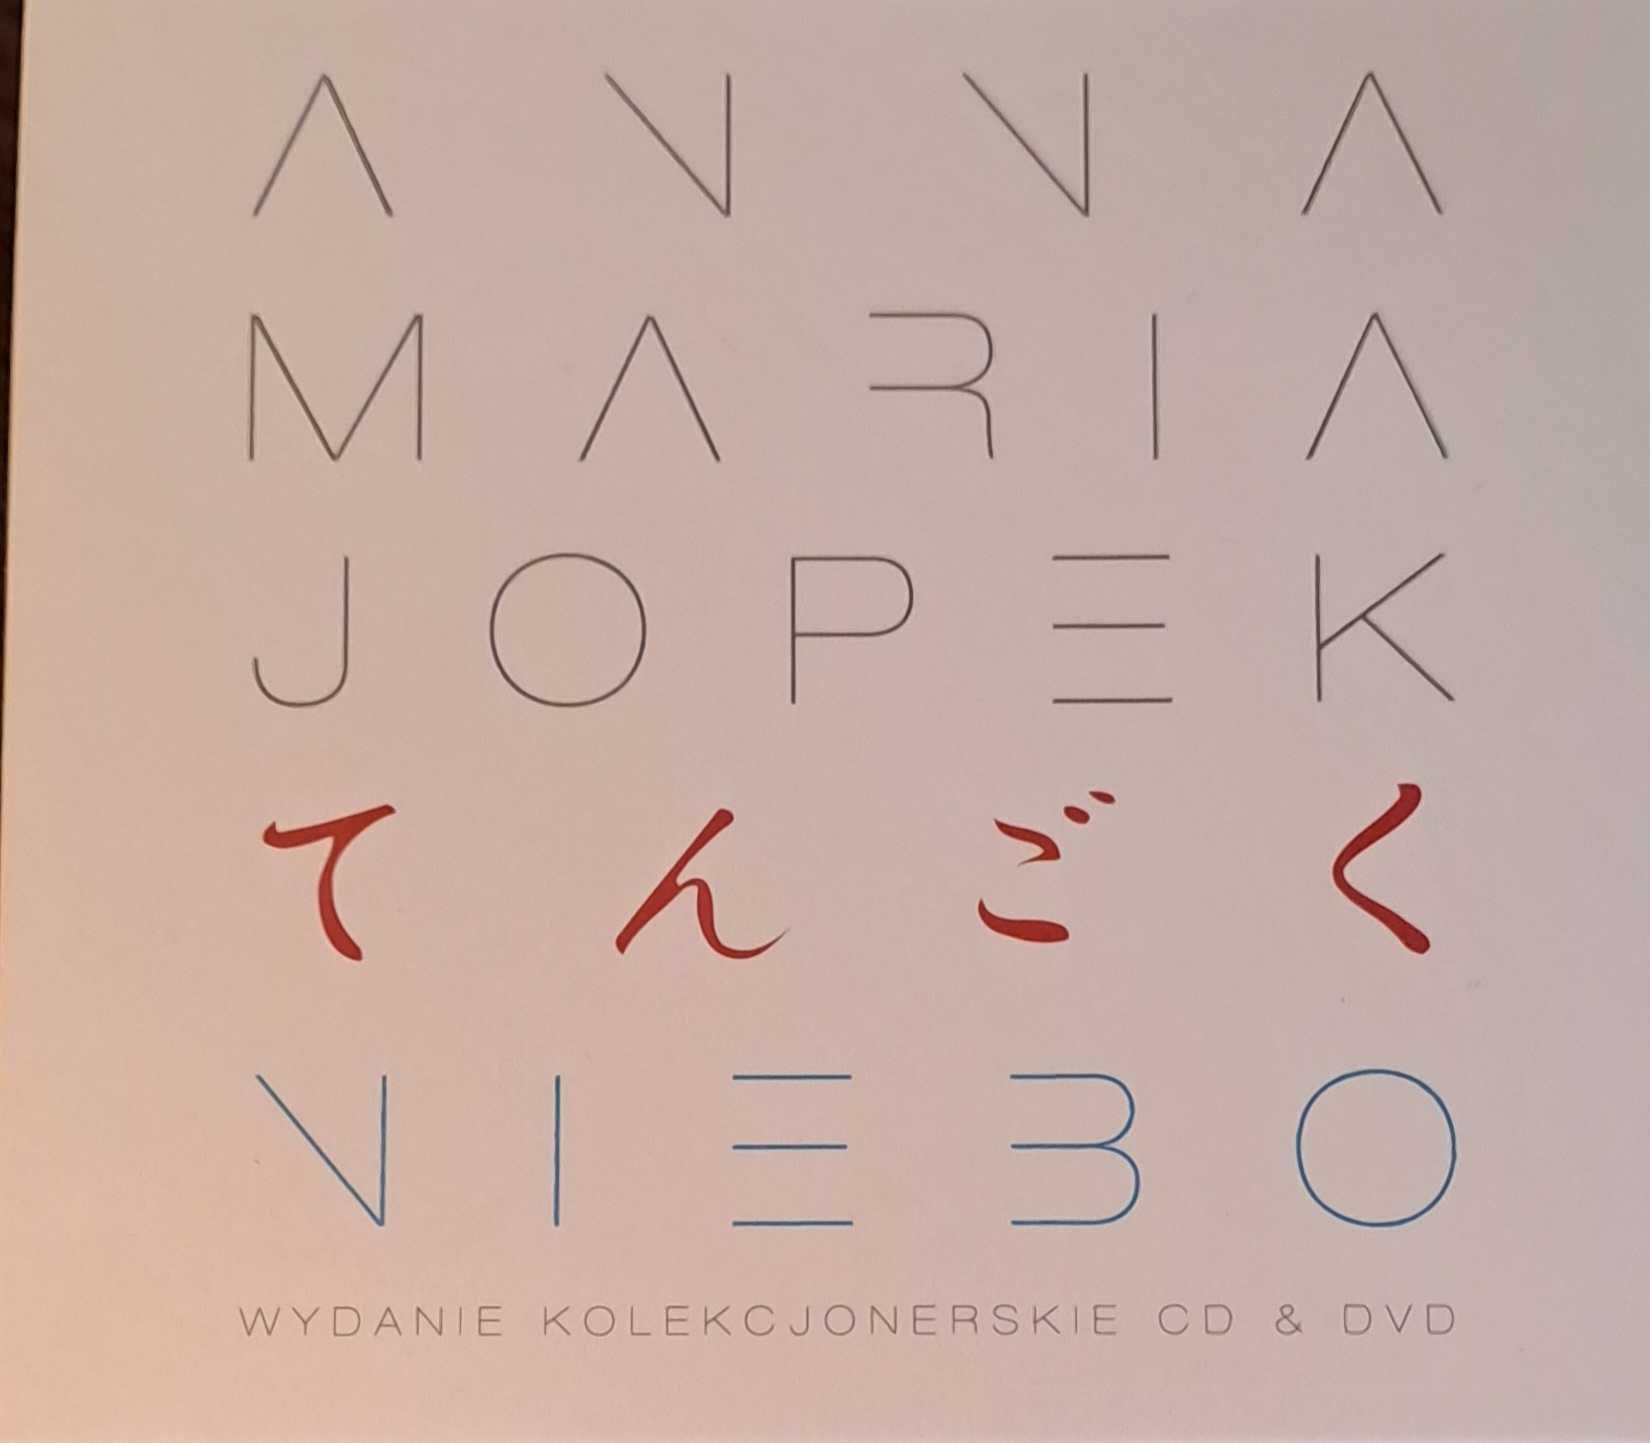 Anna Maria Jopek - "Niebo"